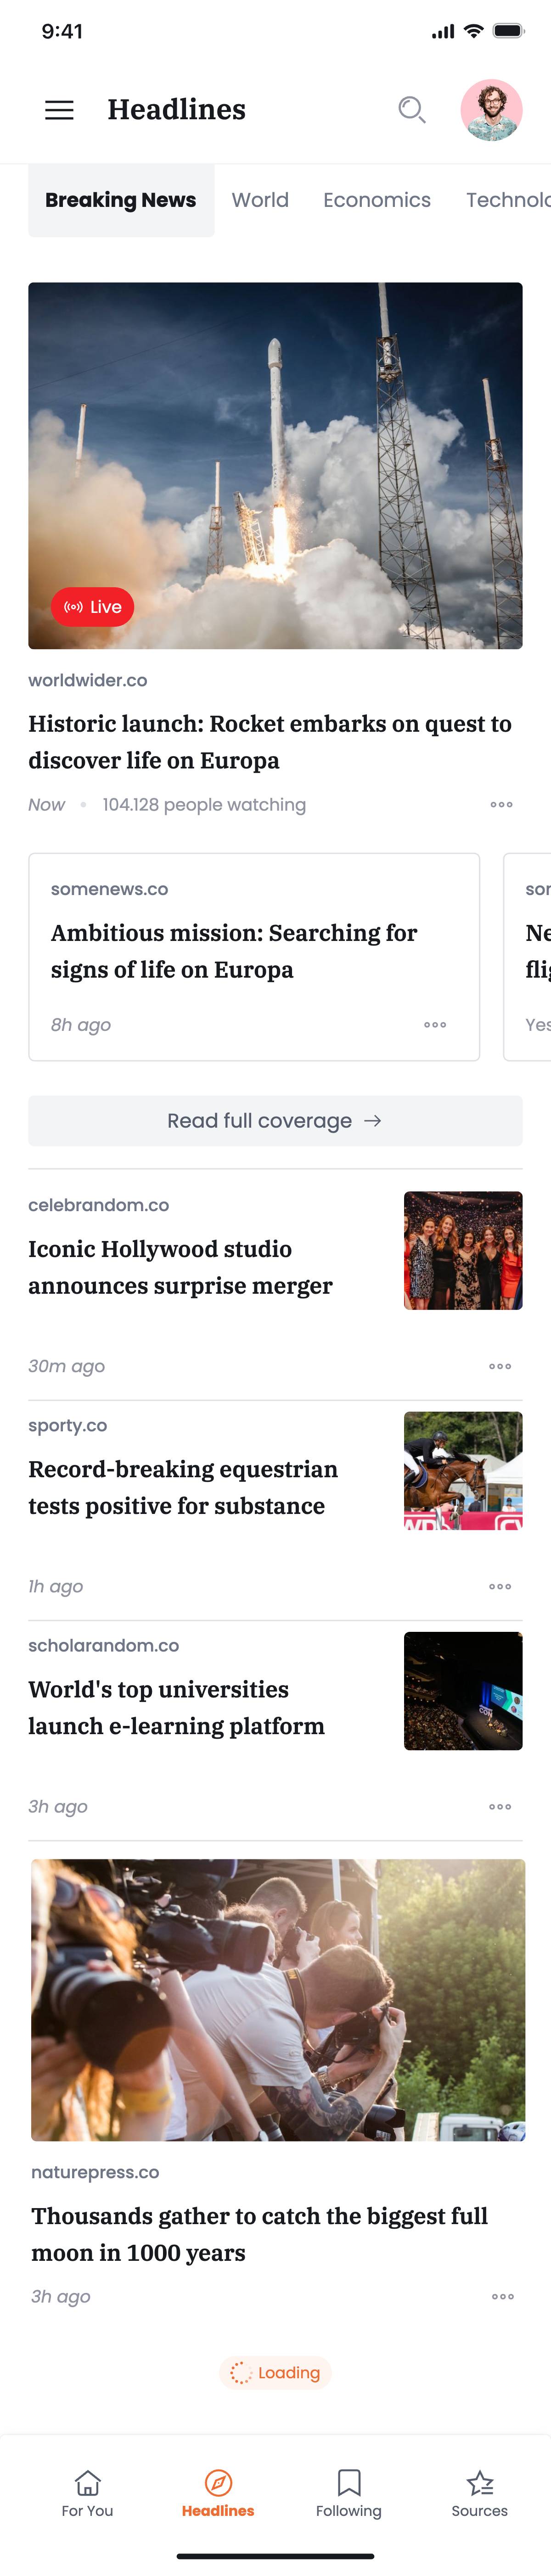 Headlines - News listing